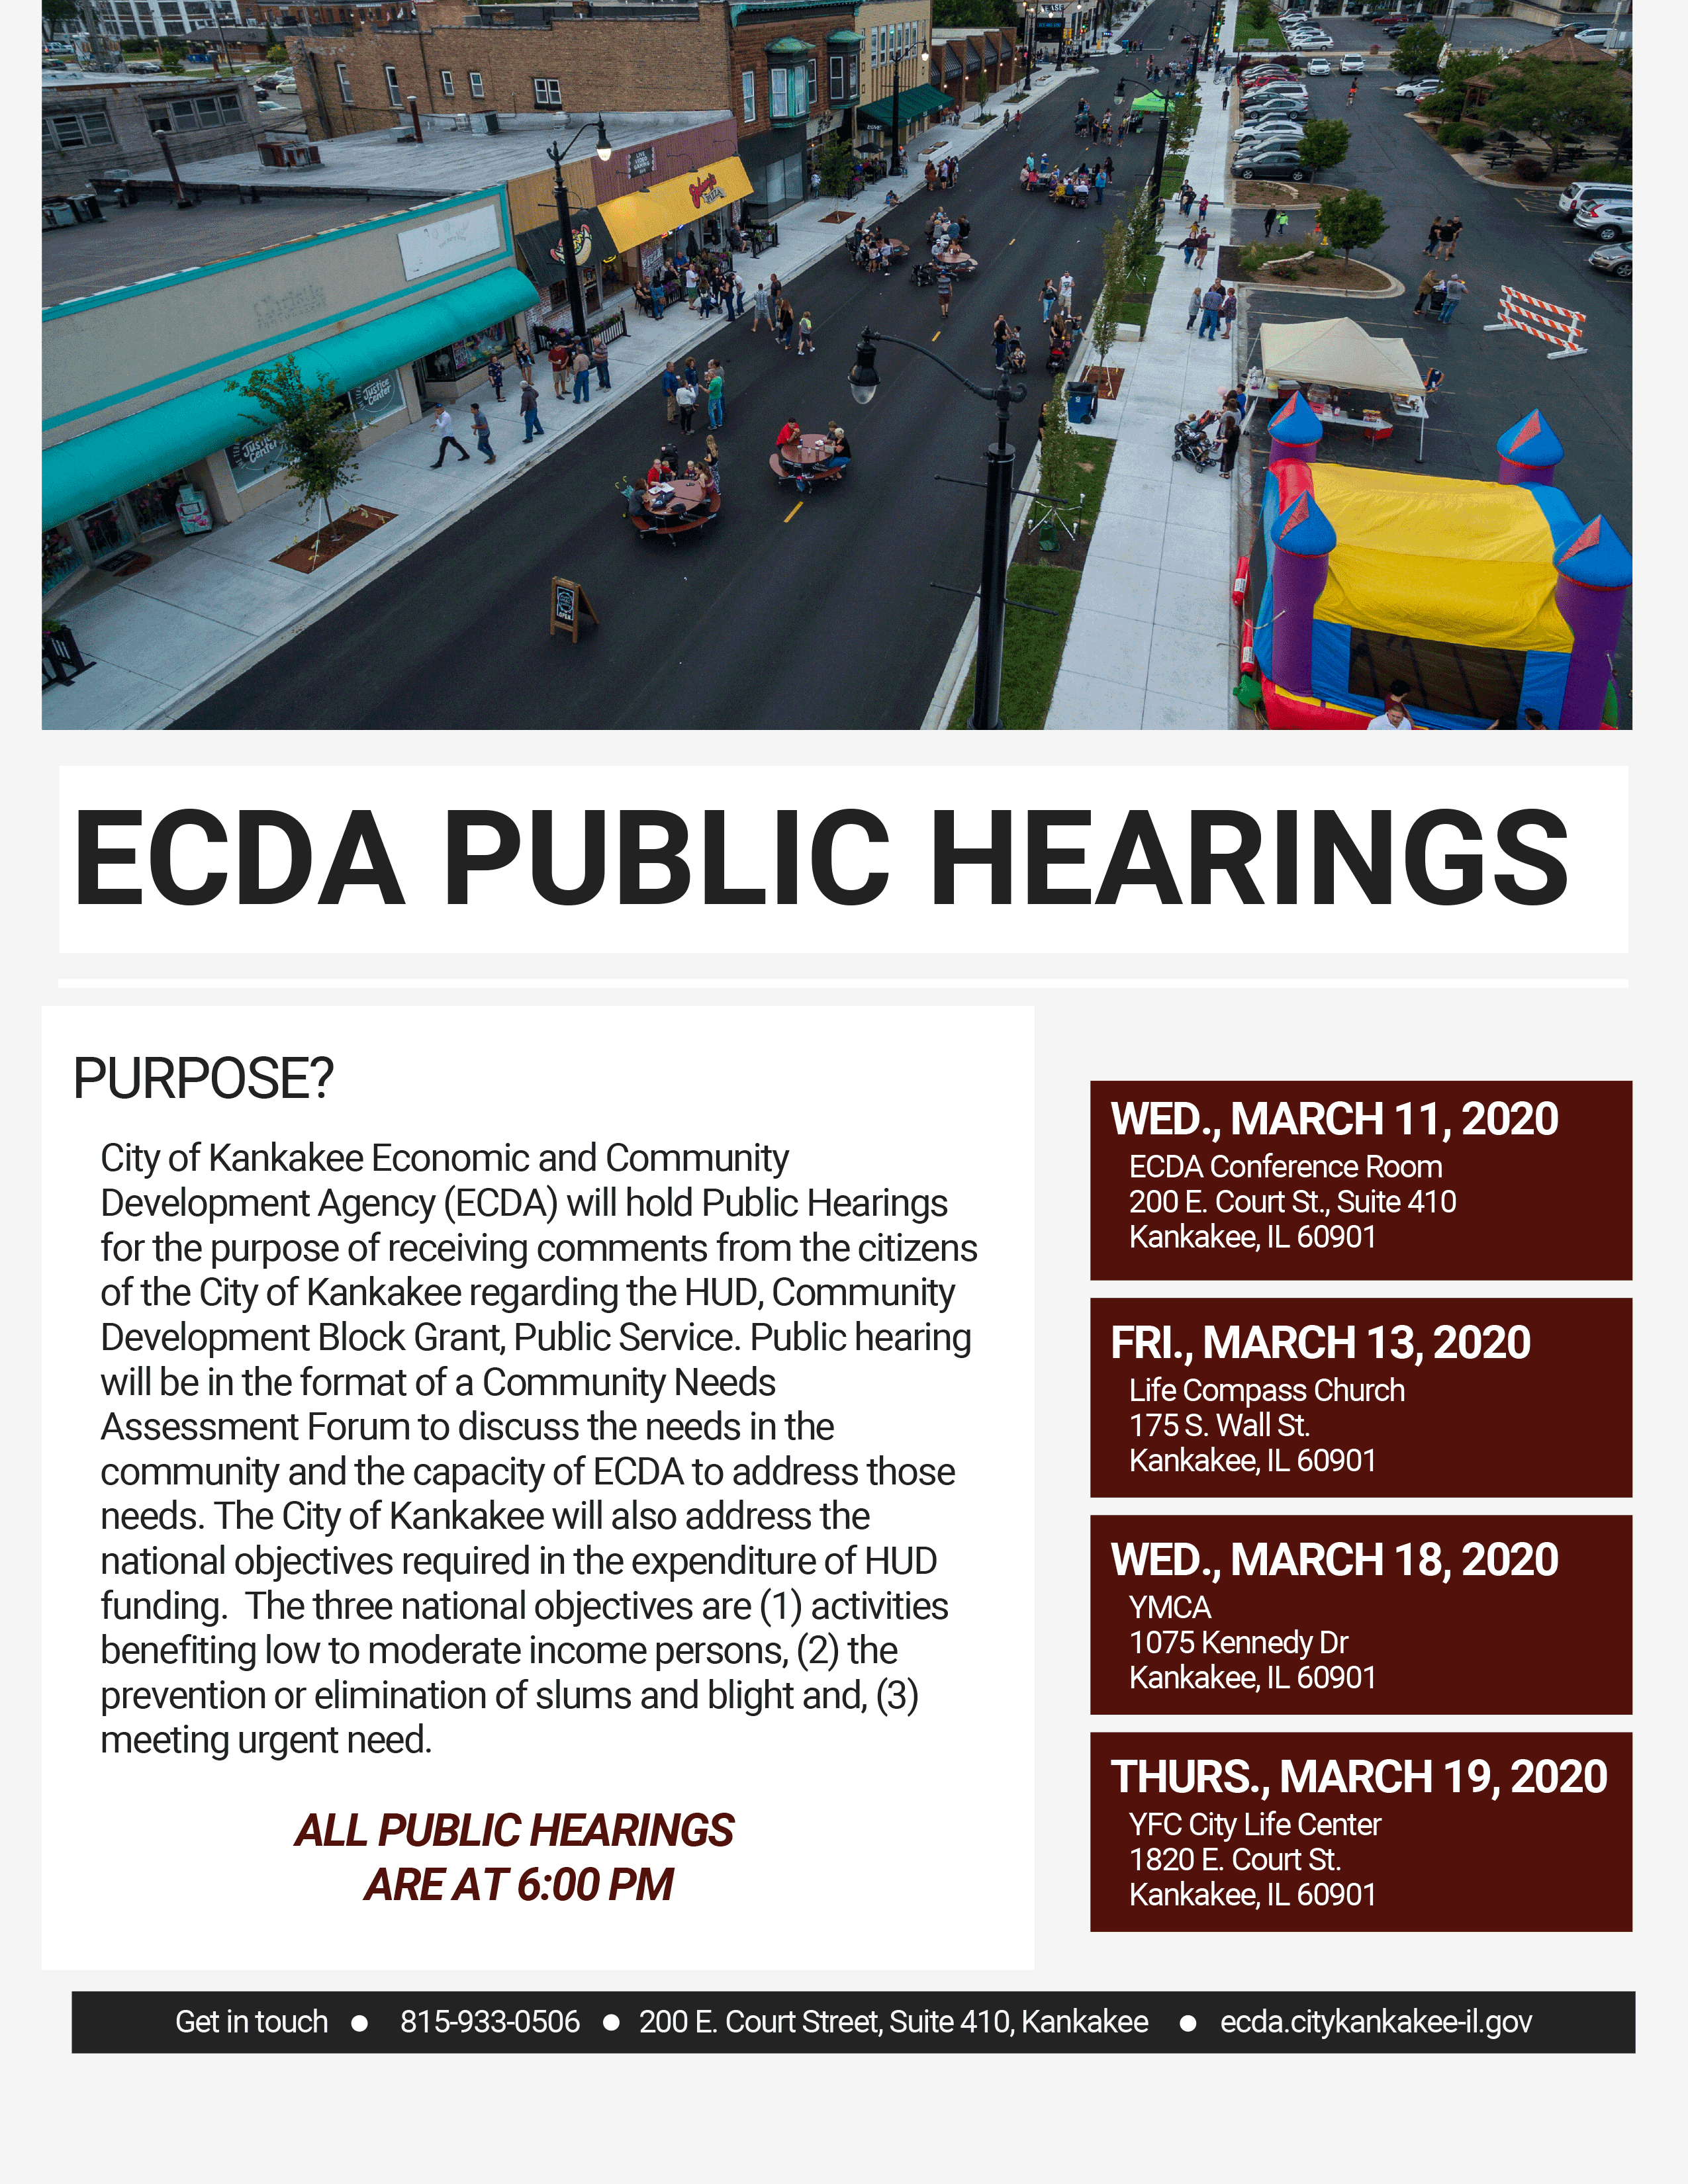 ECDA Public Hearings